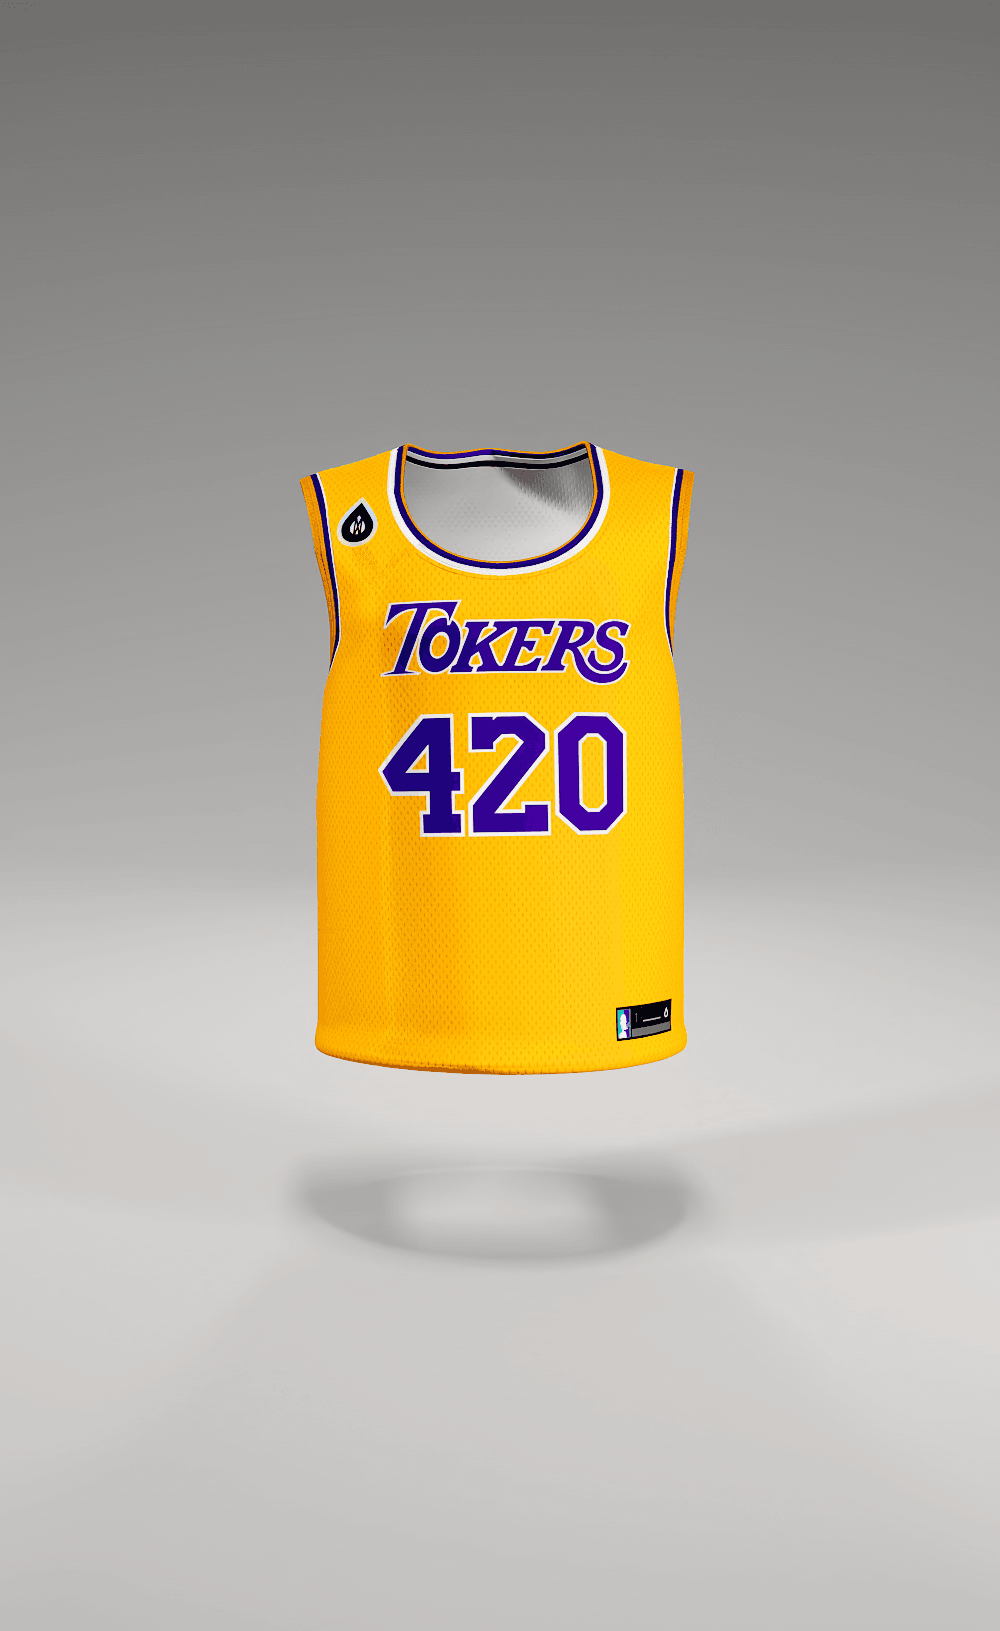 Tokers 420 Basketball